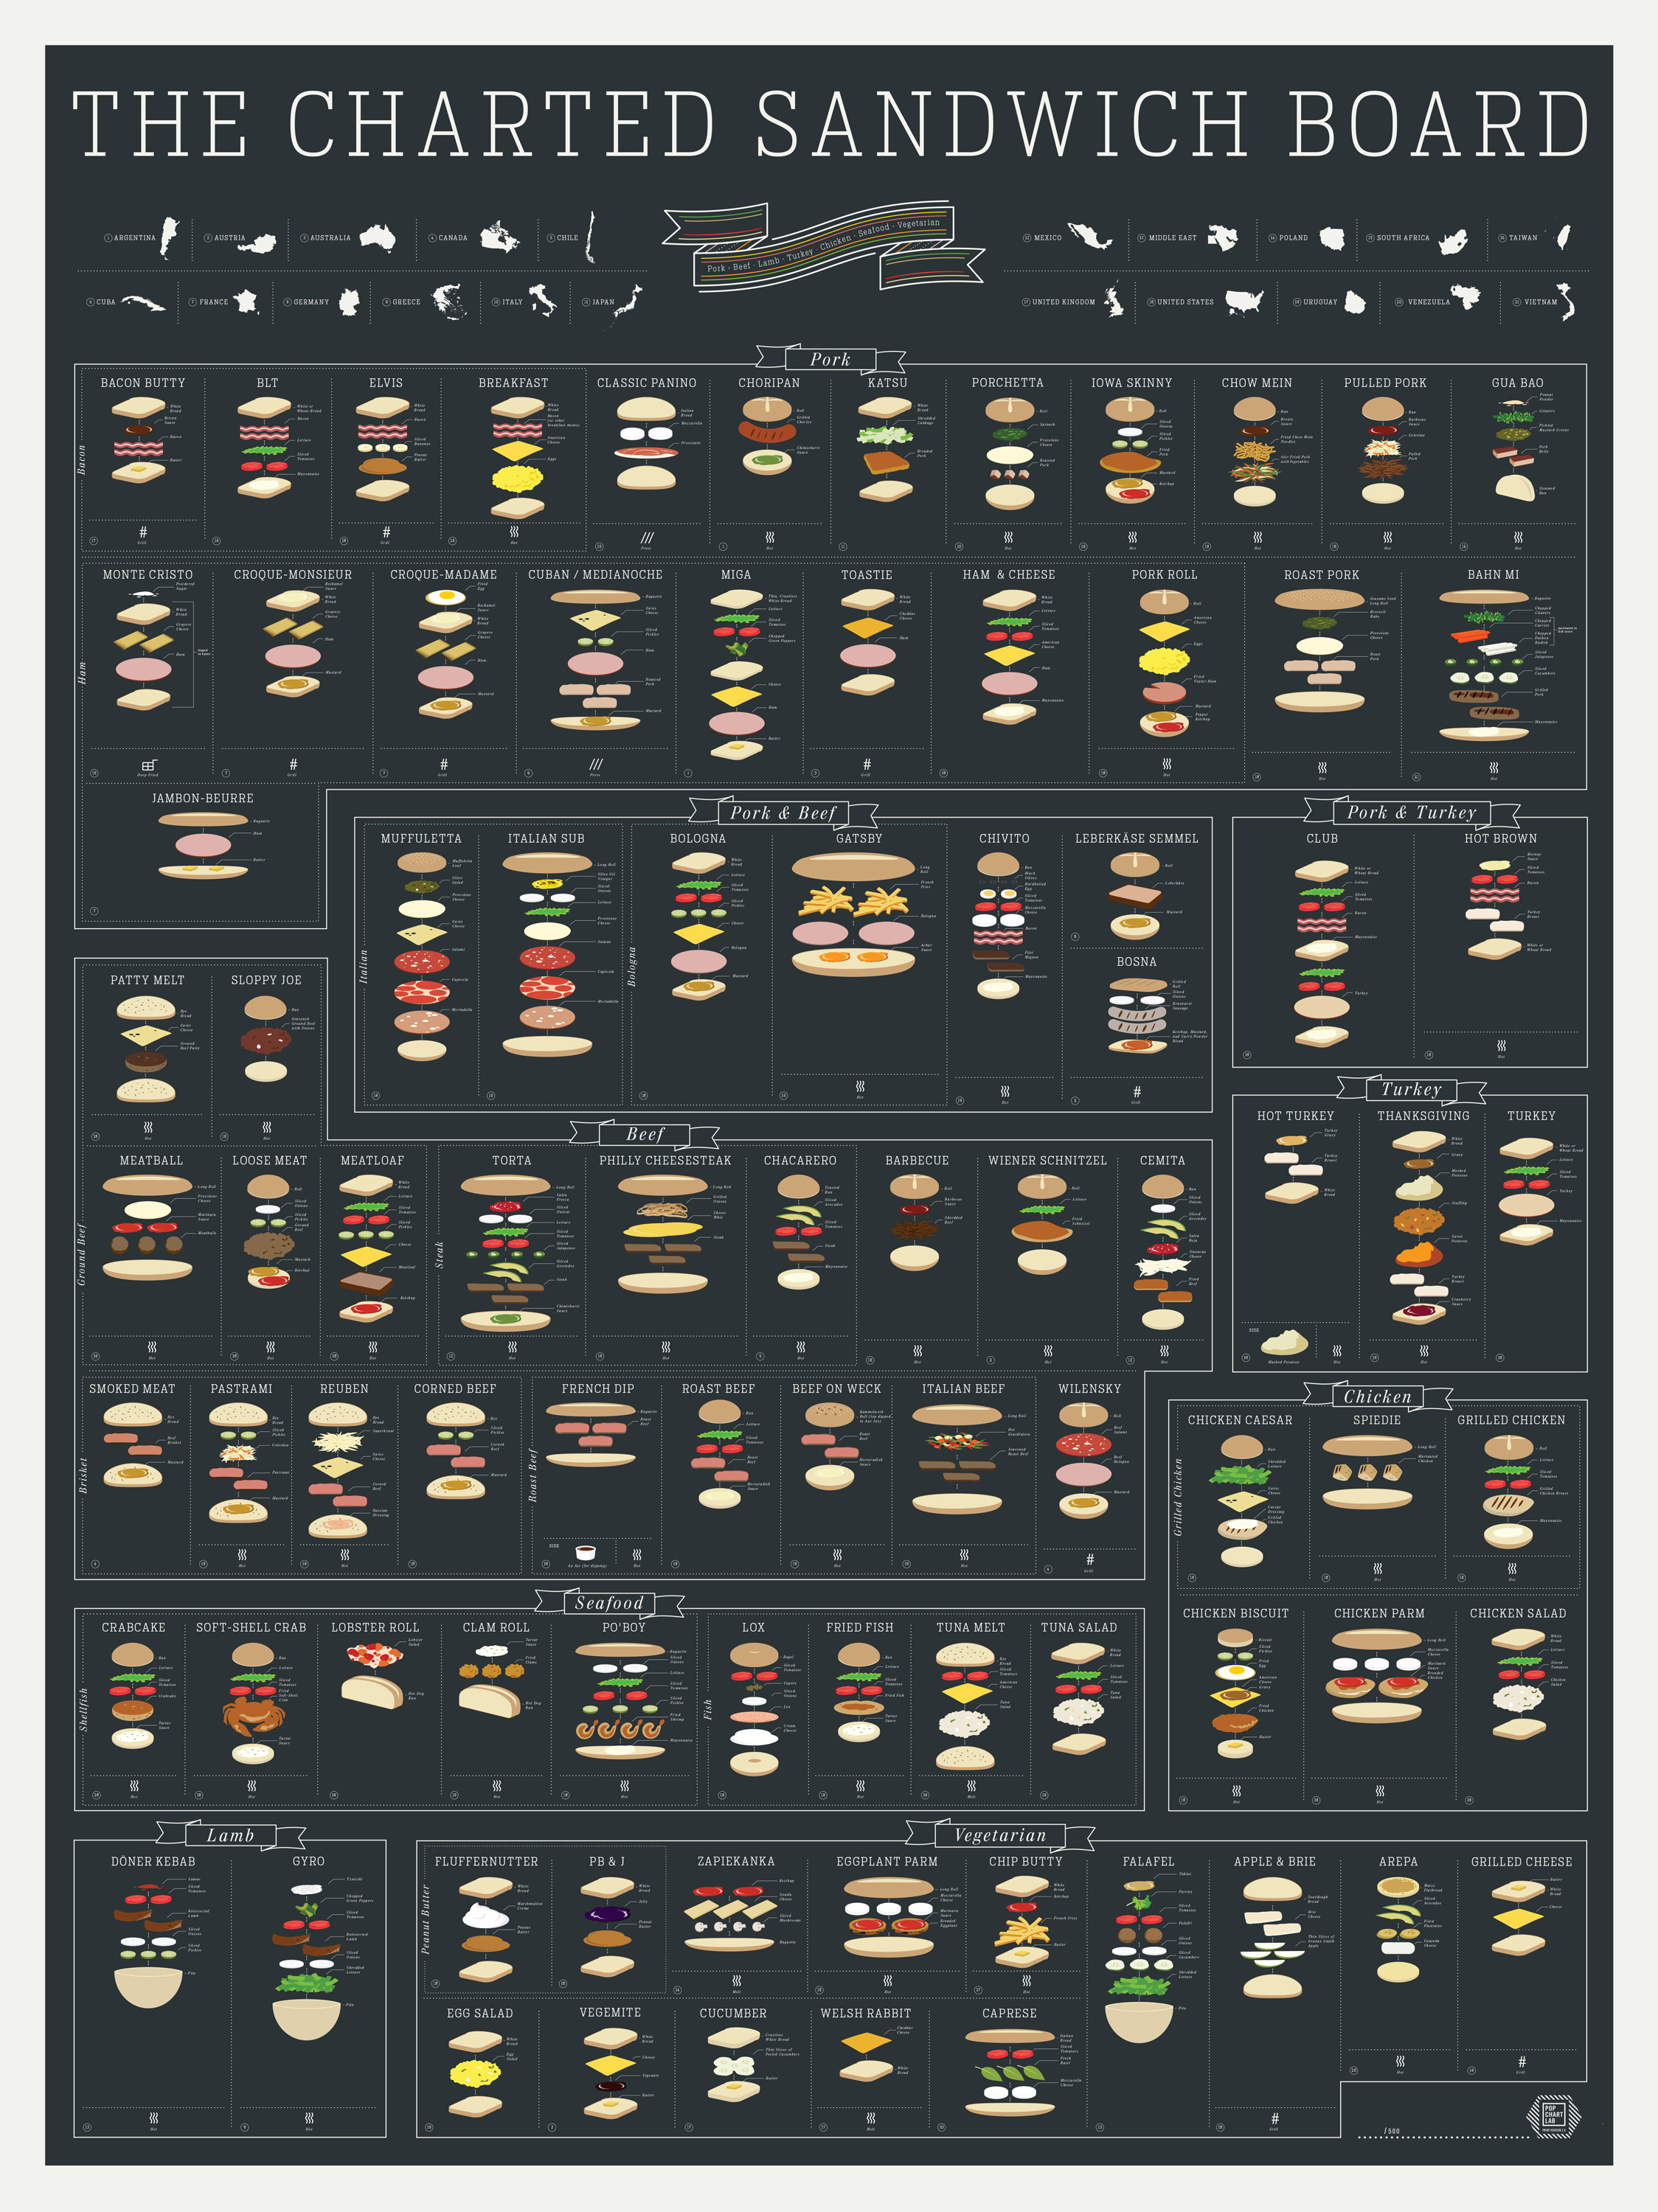 Des types de sandwichs communs et leurs ingrédients